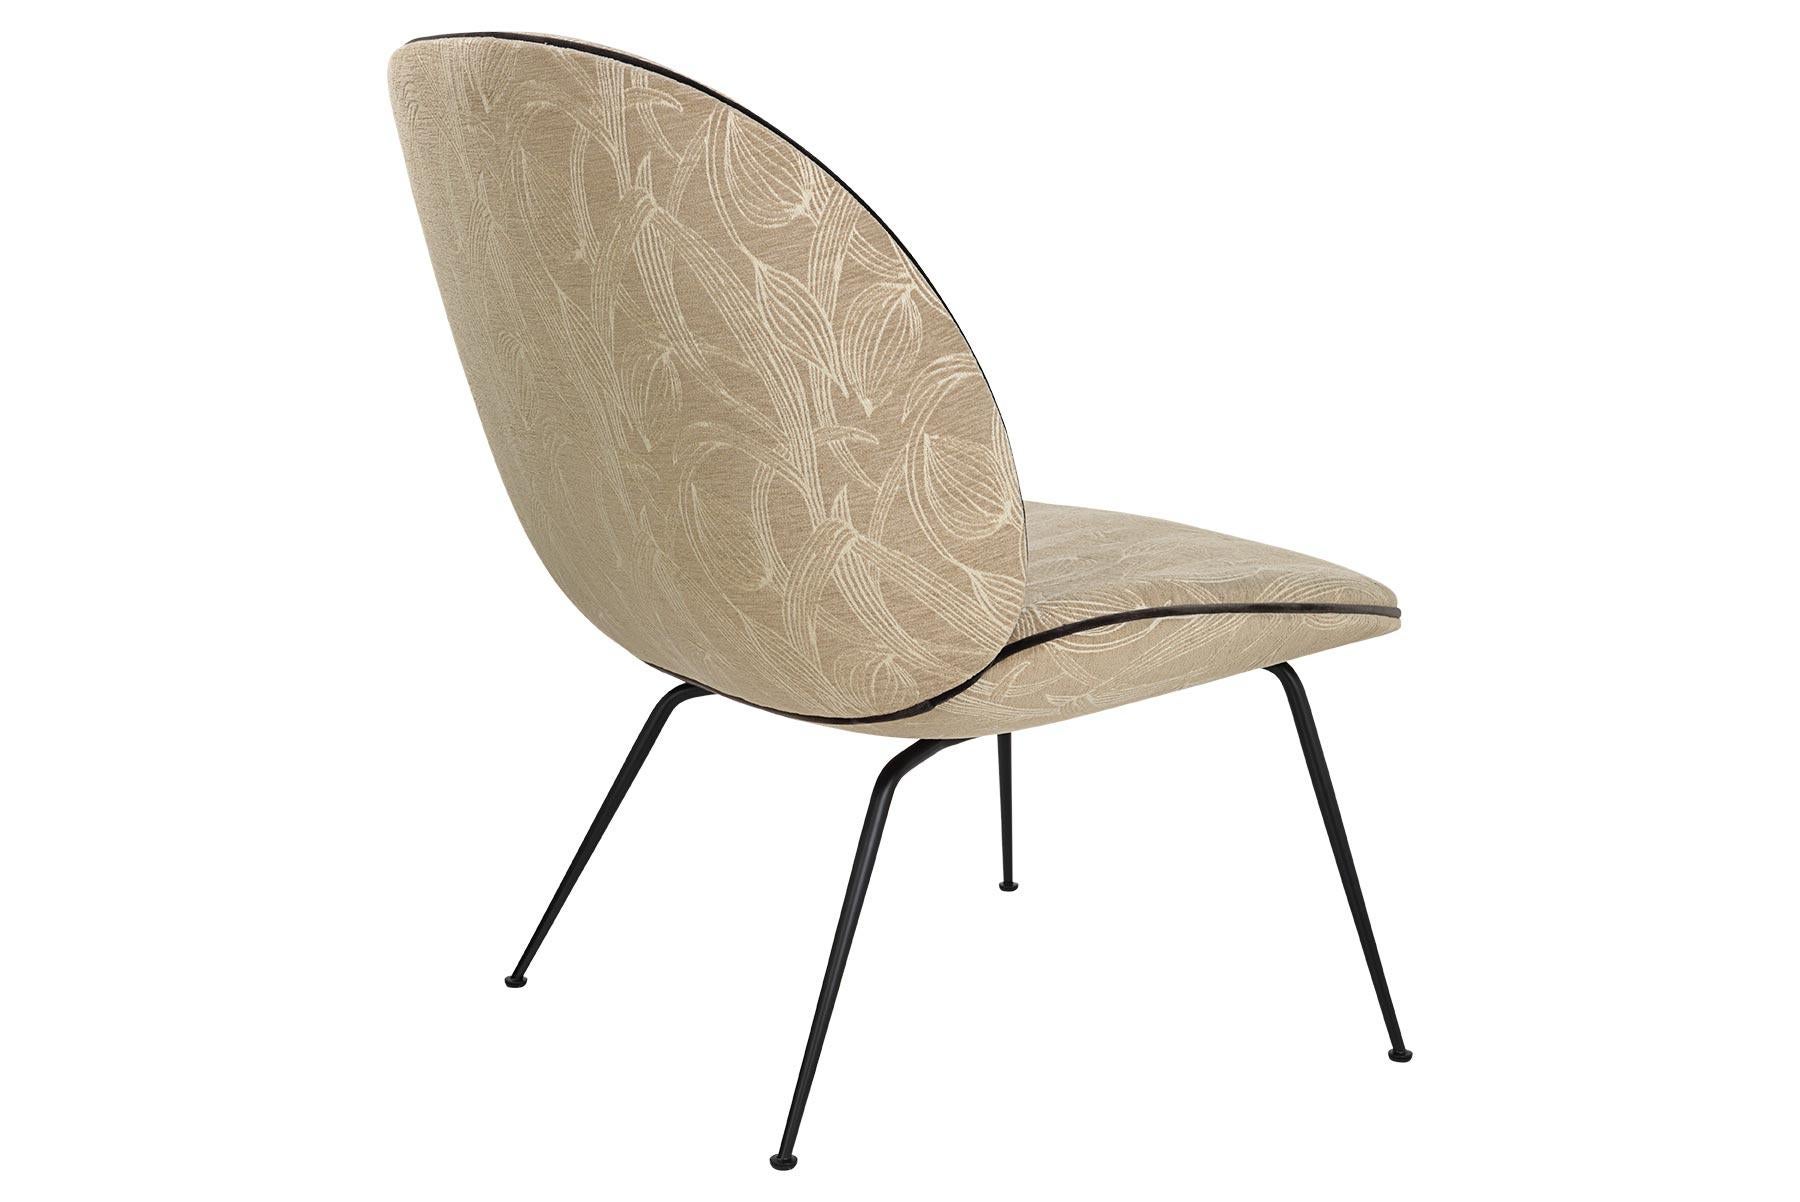 Le fauteuil de salon Beetle, avec son design confortable et sa silhouette généreusement proportionnée, est le fauteuil de salon parfait pour la relaxation dans toute maison contemporaine. La chaise longue Beetle fait fortement référence à la source